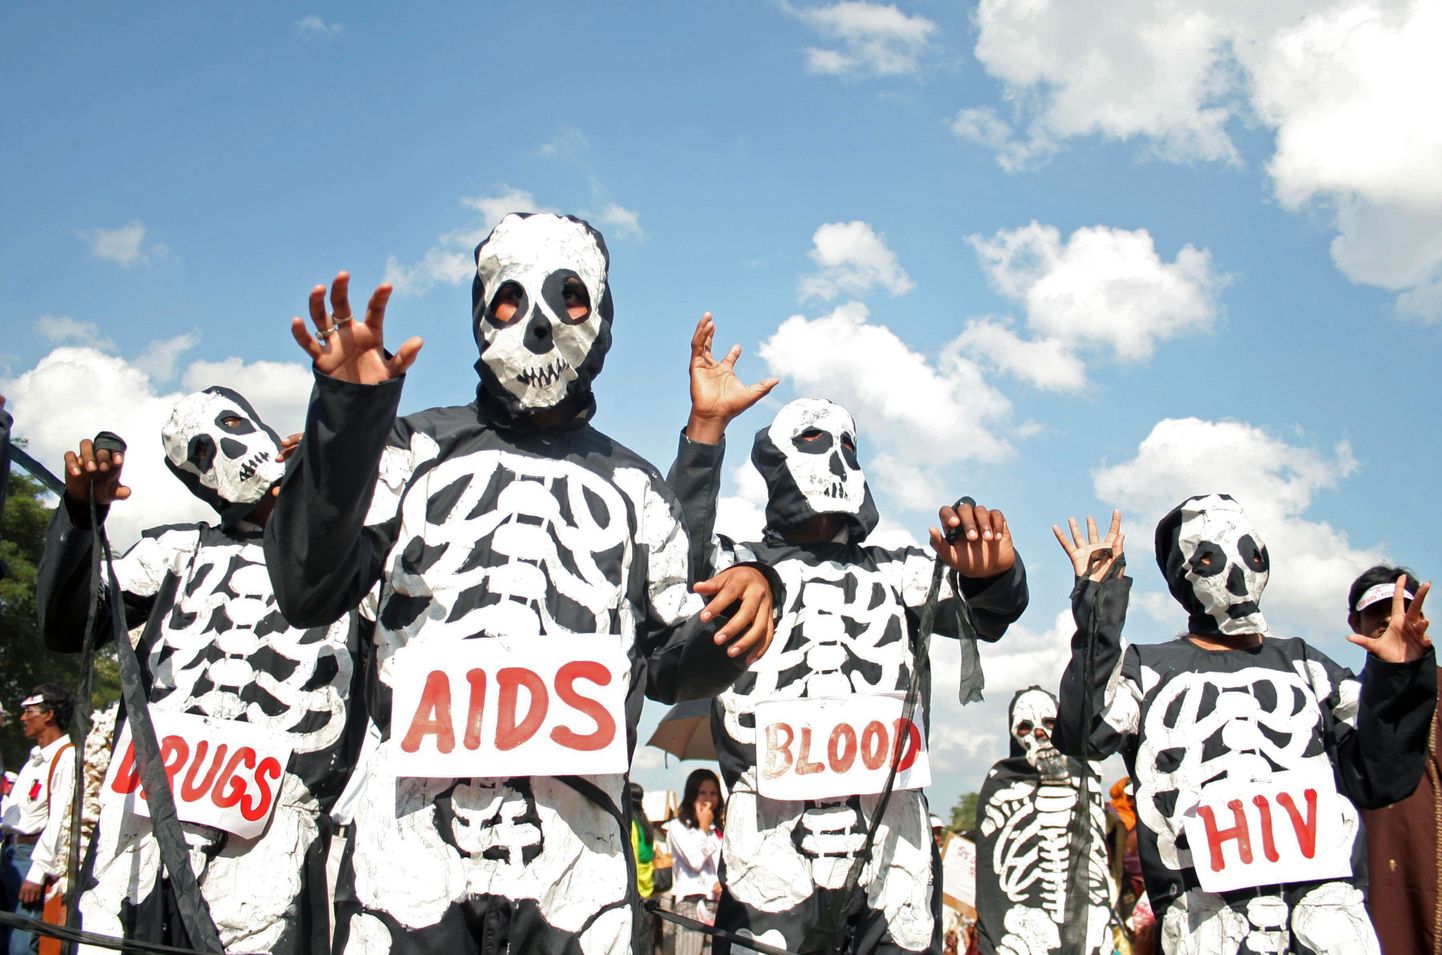 HI-viiruse ja aidsi leviku vastu võitlevad aktivistid Indias teavitustööd tegemas.